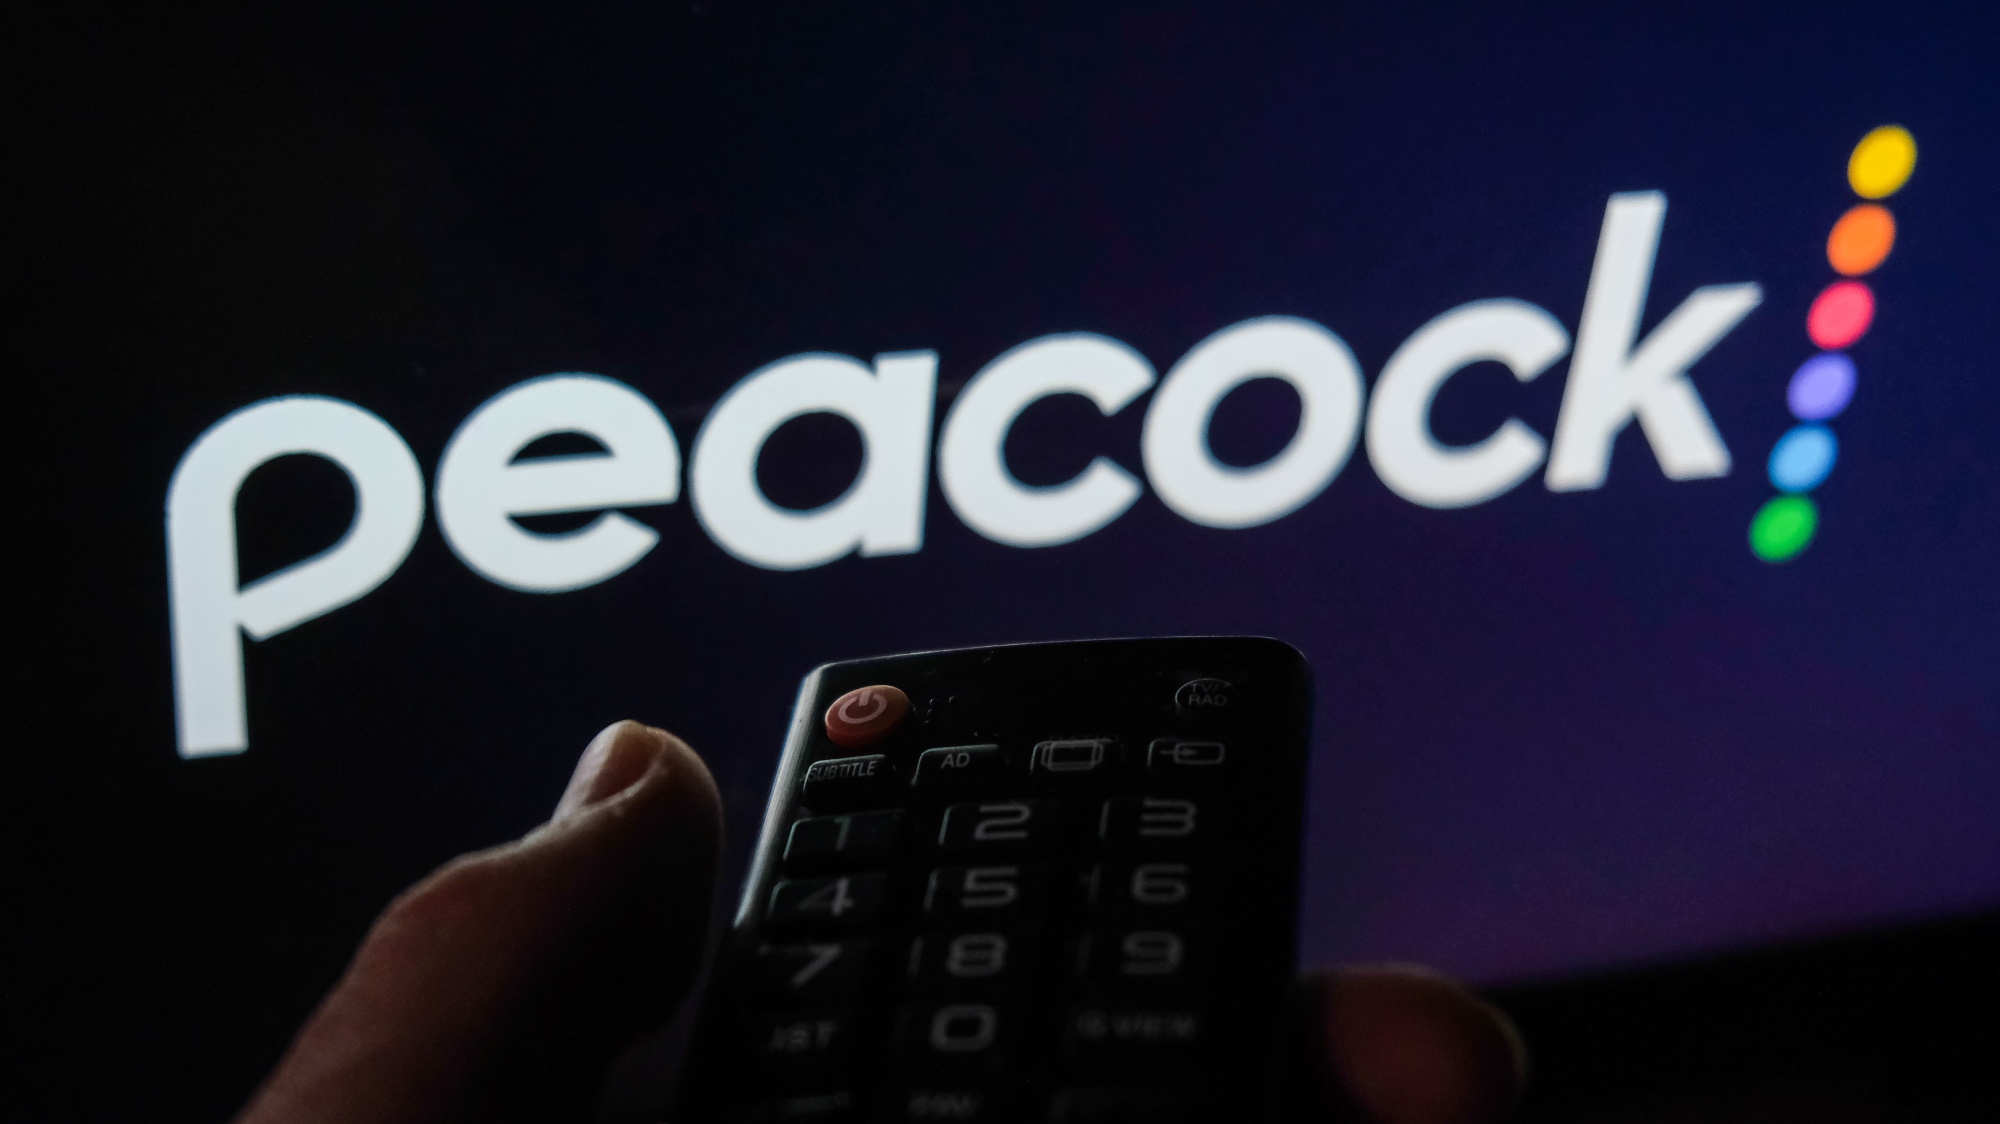 Control remoto sostenido frente a la pantalla con el logotipo de Peacock TV